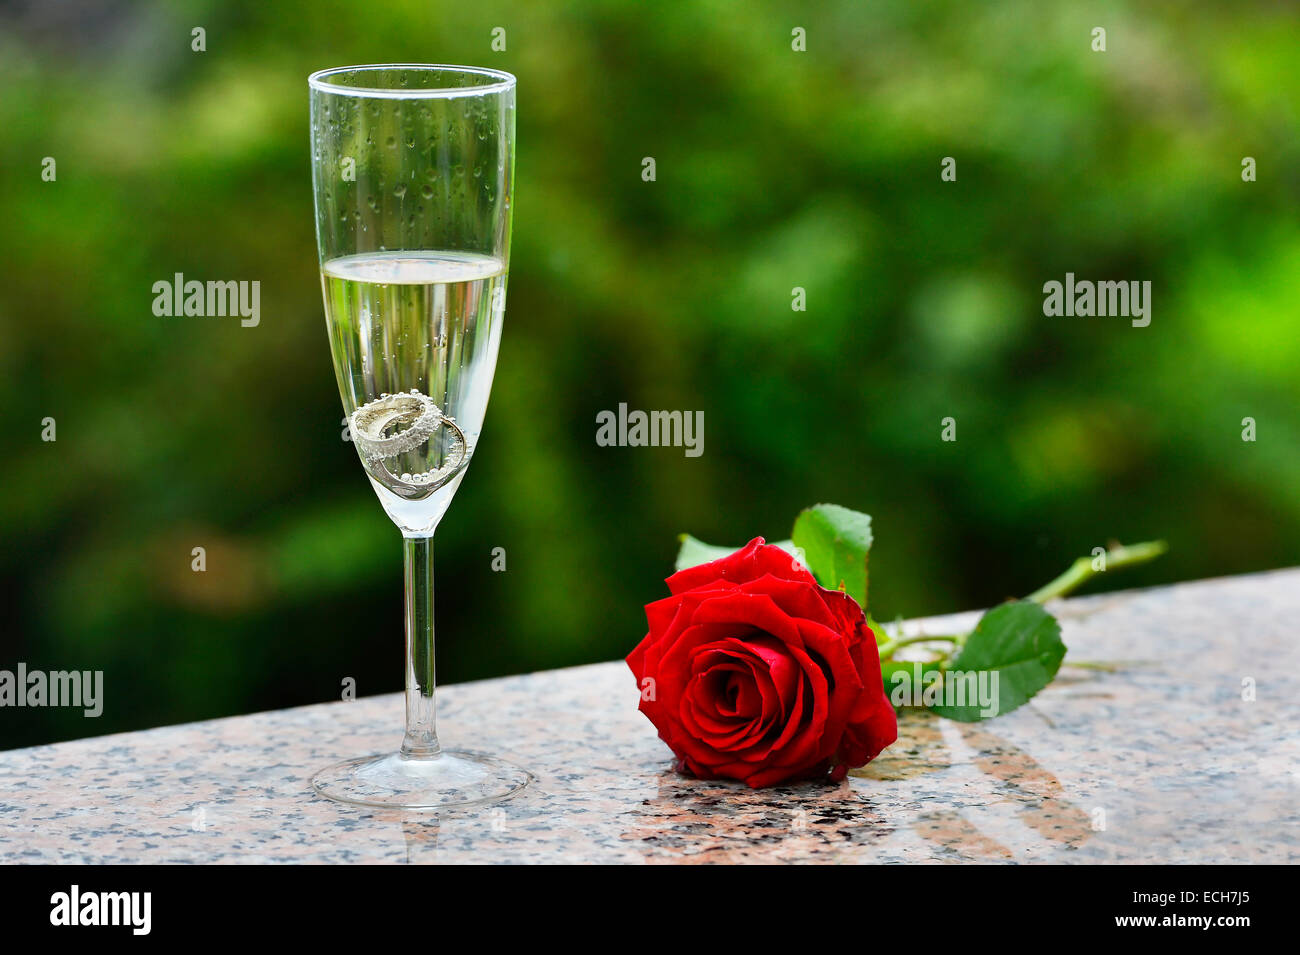 Les anneaux de mariage et rose rouge dans un verre à champagne Banque D'Images